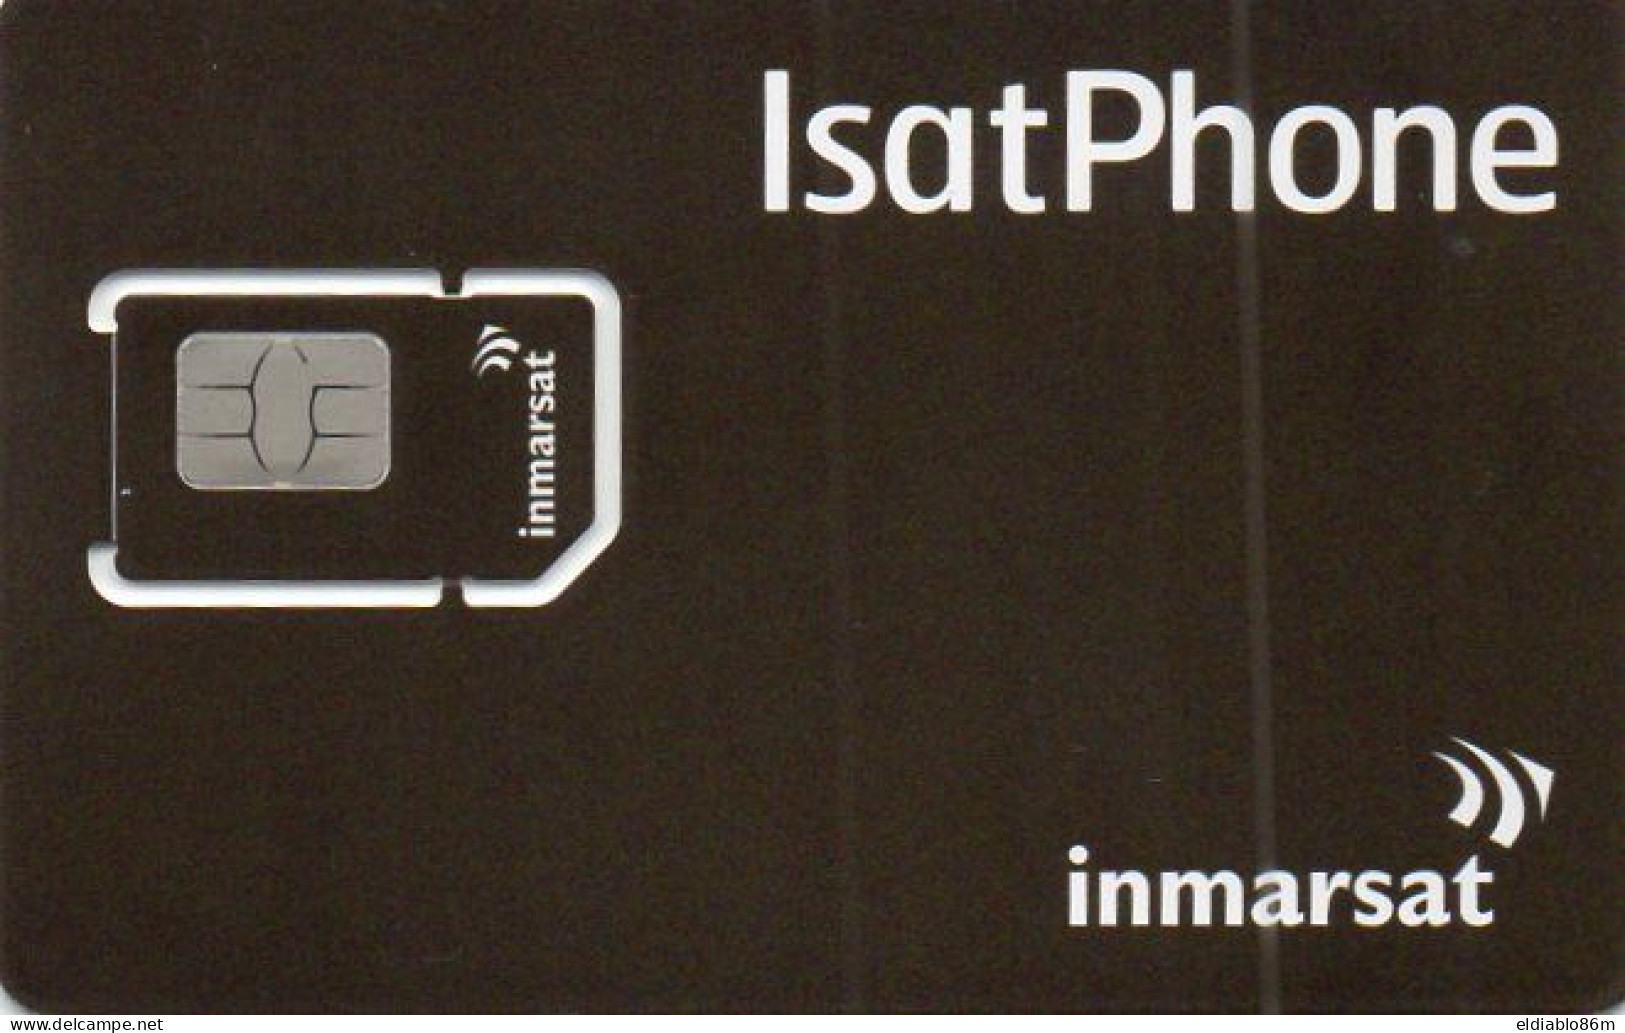 GSM CARD - SATELLITE CARD - INMARSAT - ISATPHONE - MINT - Onbekende Oorsprong